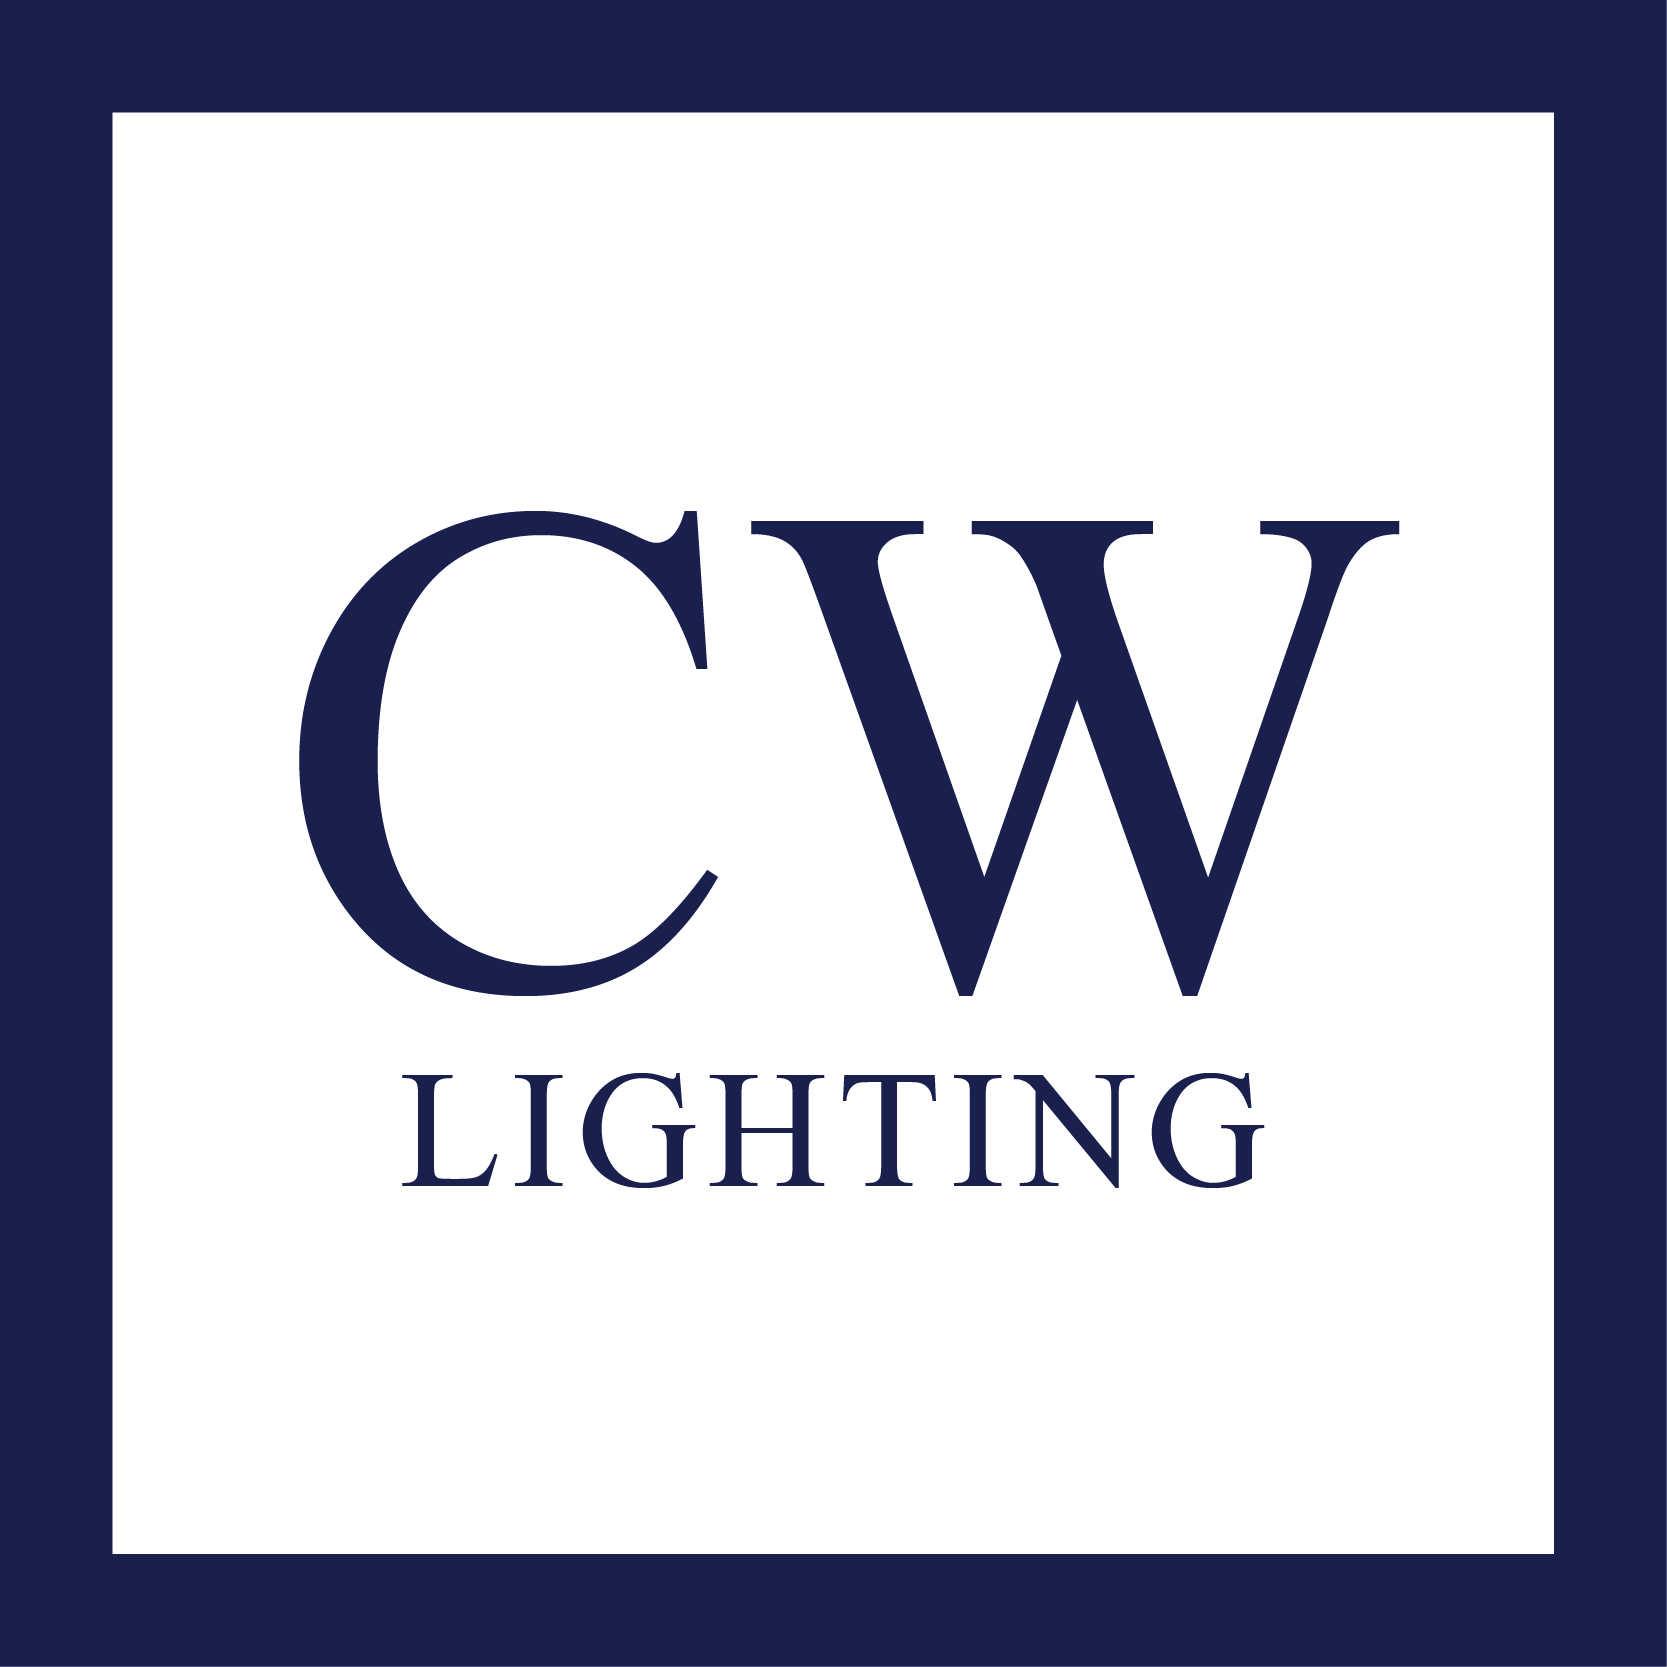 CW Lighting logo